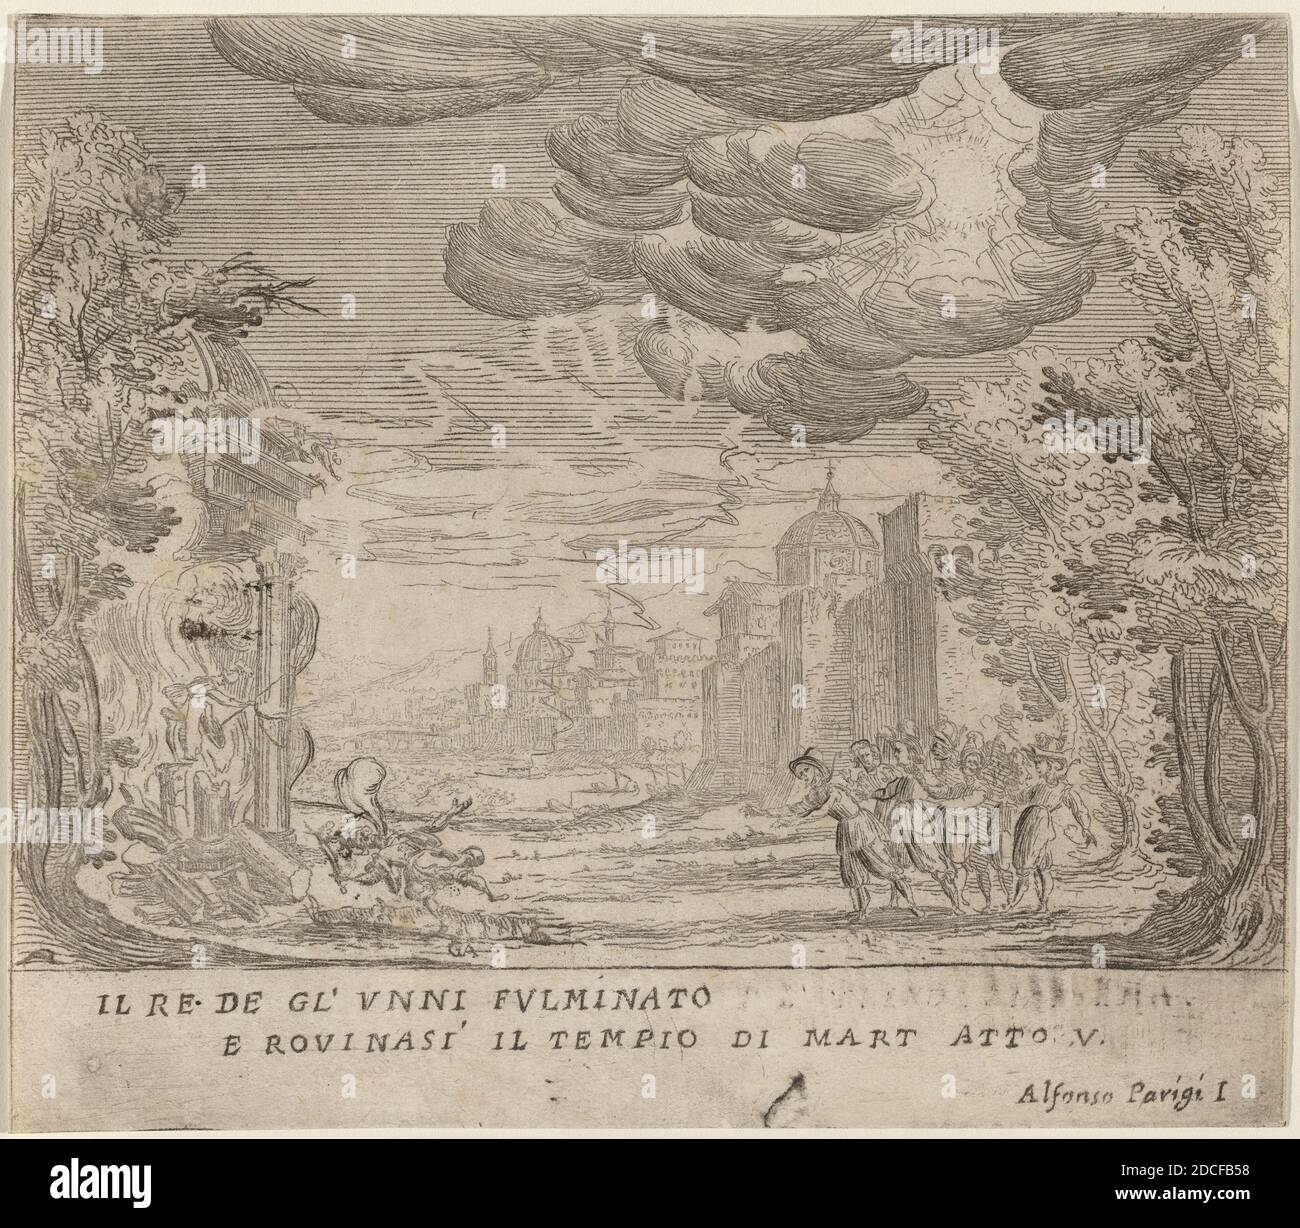 Alfonso Parigi II, (artista), fiorentino, 1606 - 1656, l'incisioni del Re degli Unni e il crollo della regola del Mart, la tragedia di Sant'Ursula: Atto V, (serie), incisione Foto Stock